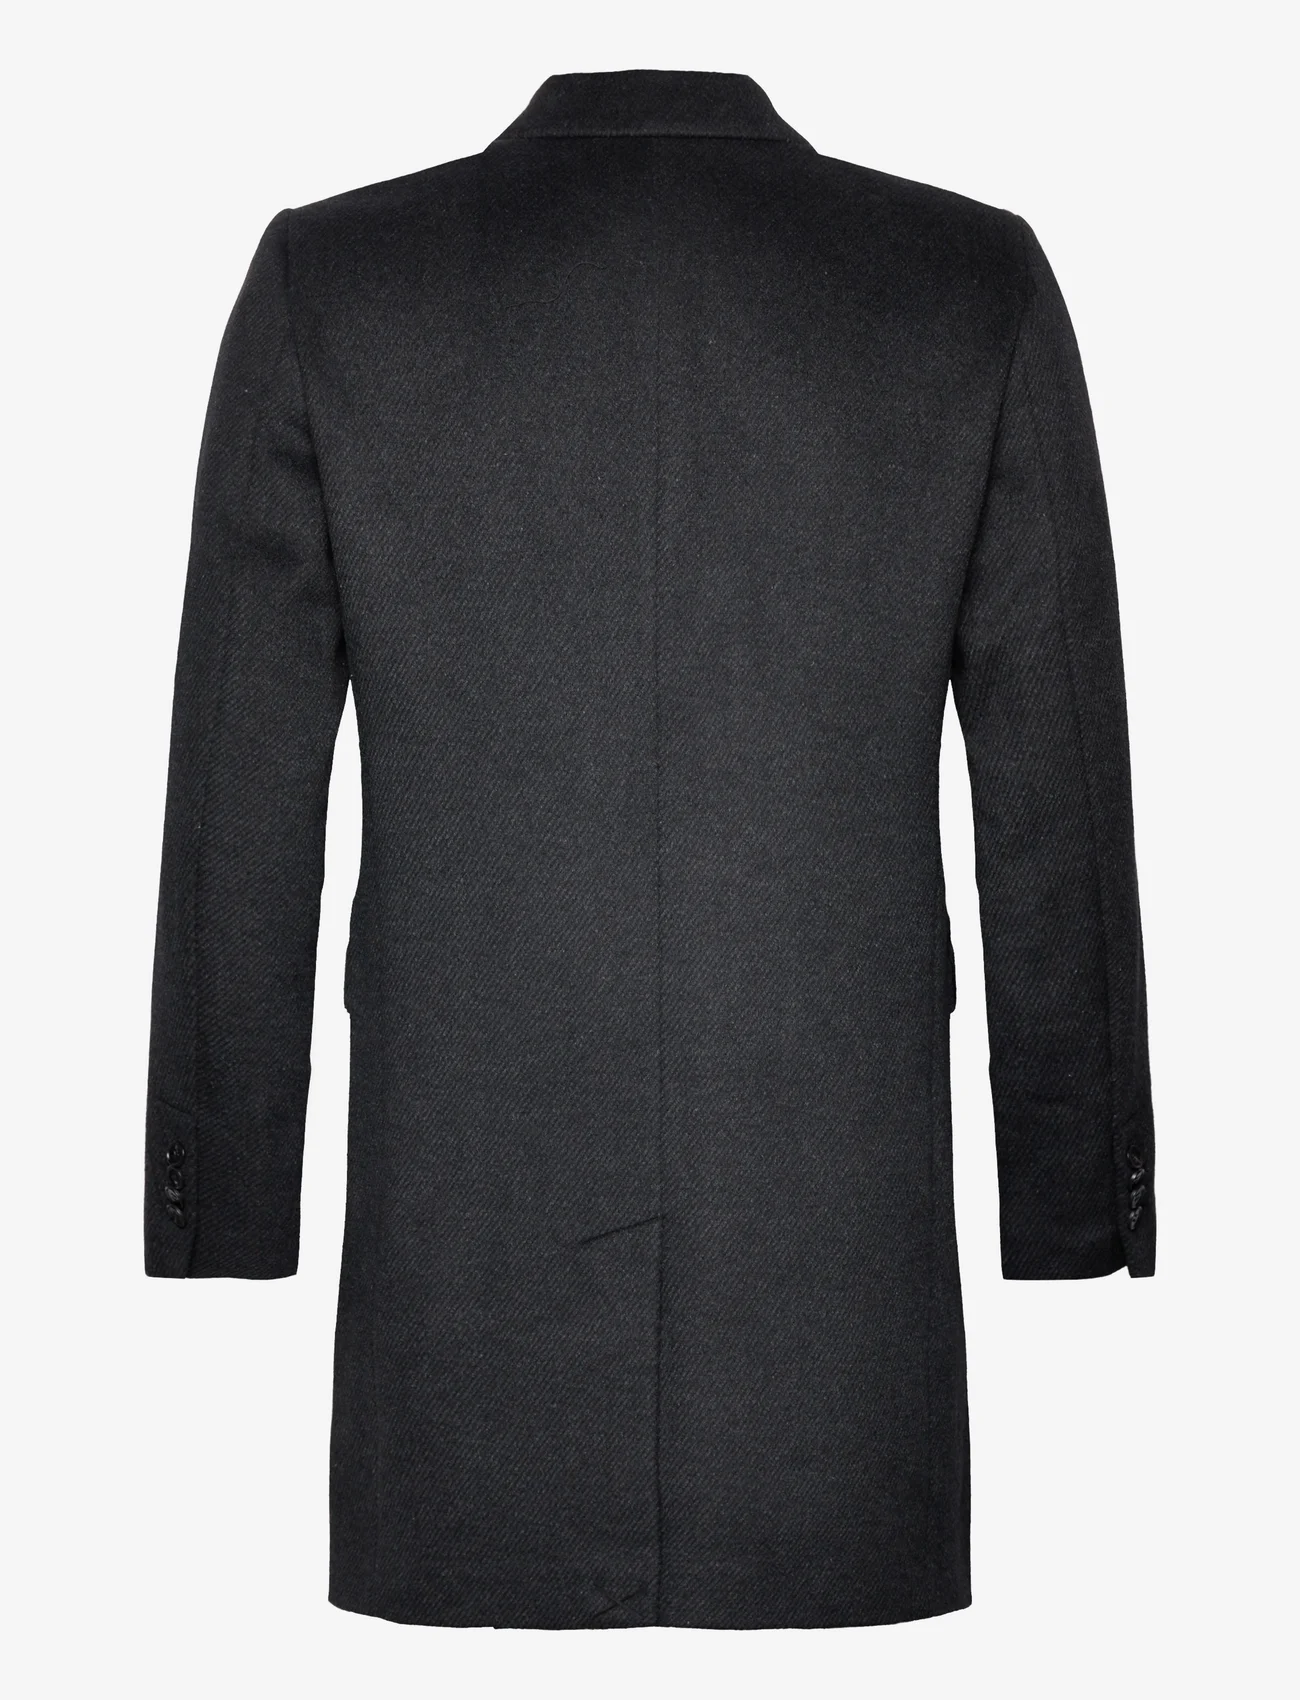 Bruuns Bazaar - FuzzyBBDoubalina coat - vinterjackor - black melange - 1